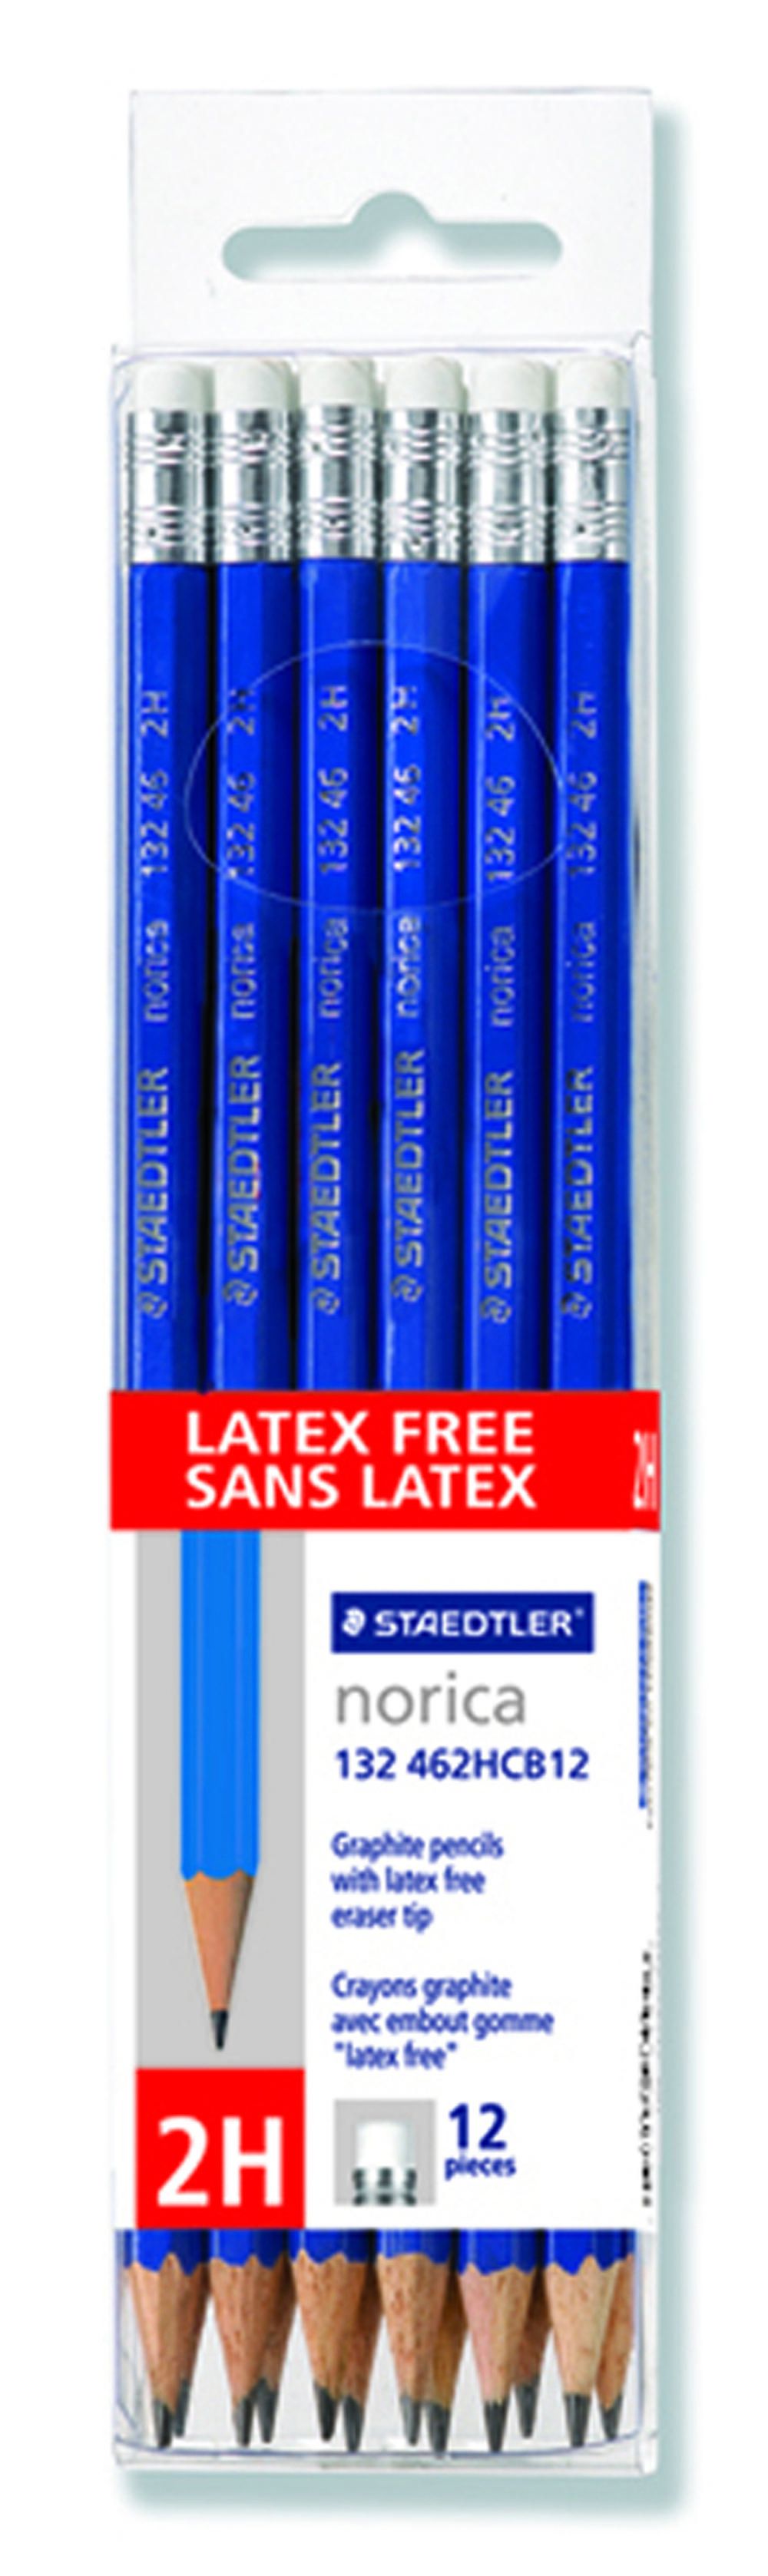 STAEDTLER NORICA 36 HB#2 Graphite Pencils 132 49CB36 BRAND NEW BONUS BONUS A+